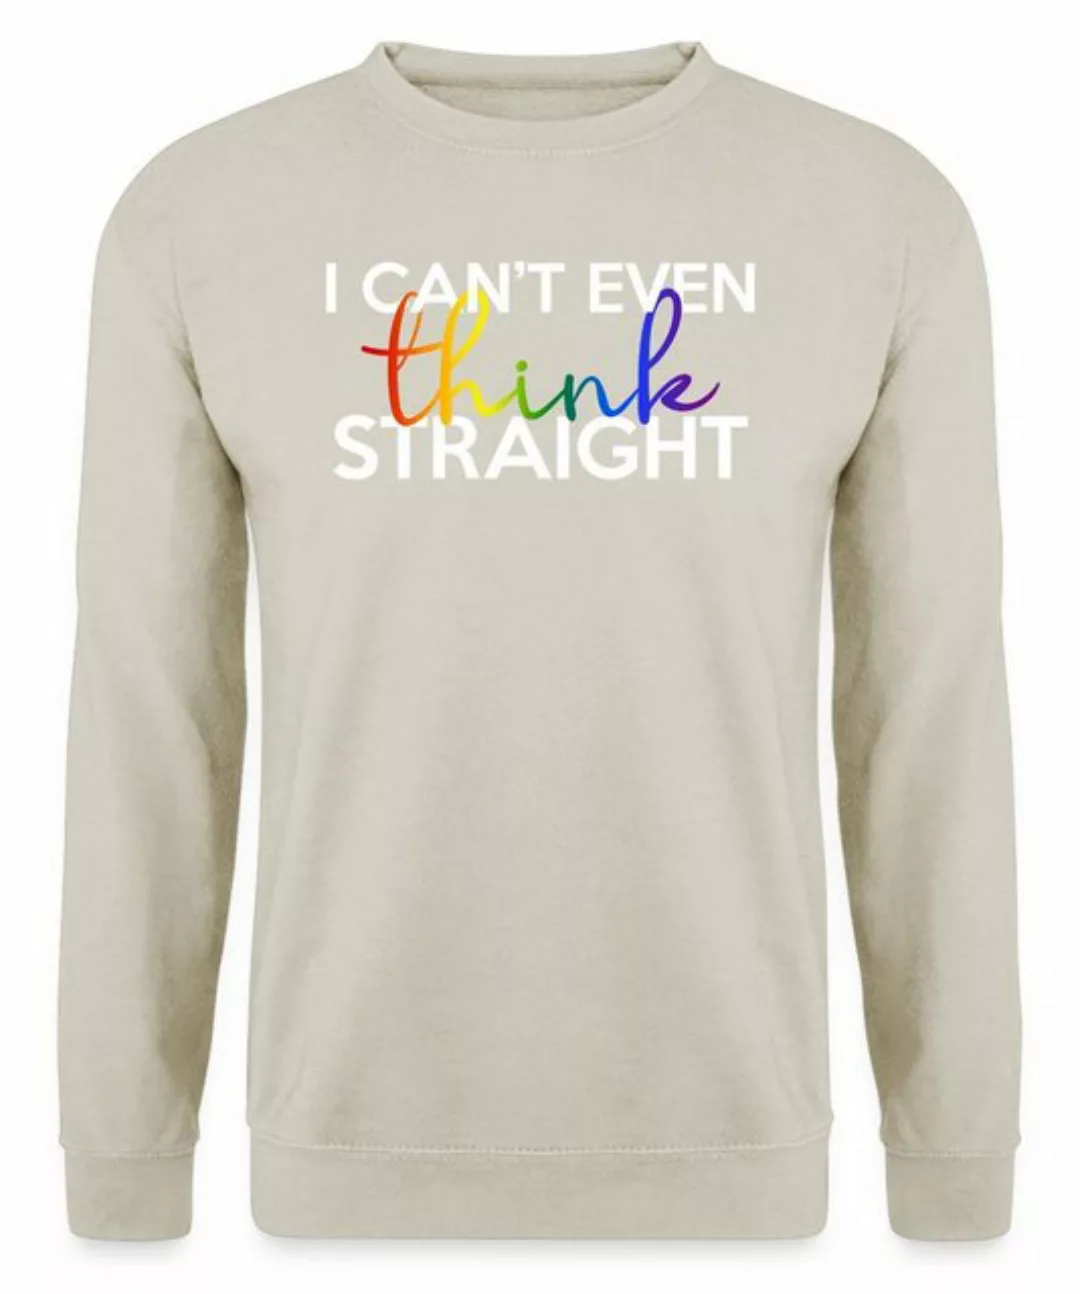 Quattro Formatee Sweatshirt I can't even think Straight - Stolz Regenbogen günstig online kaufen